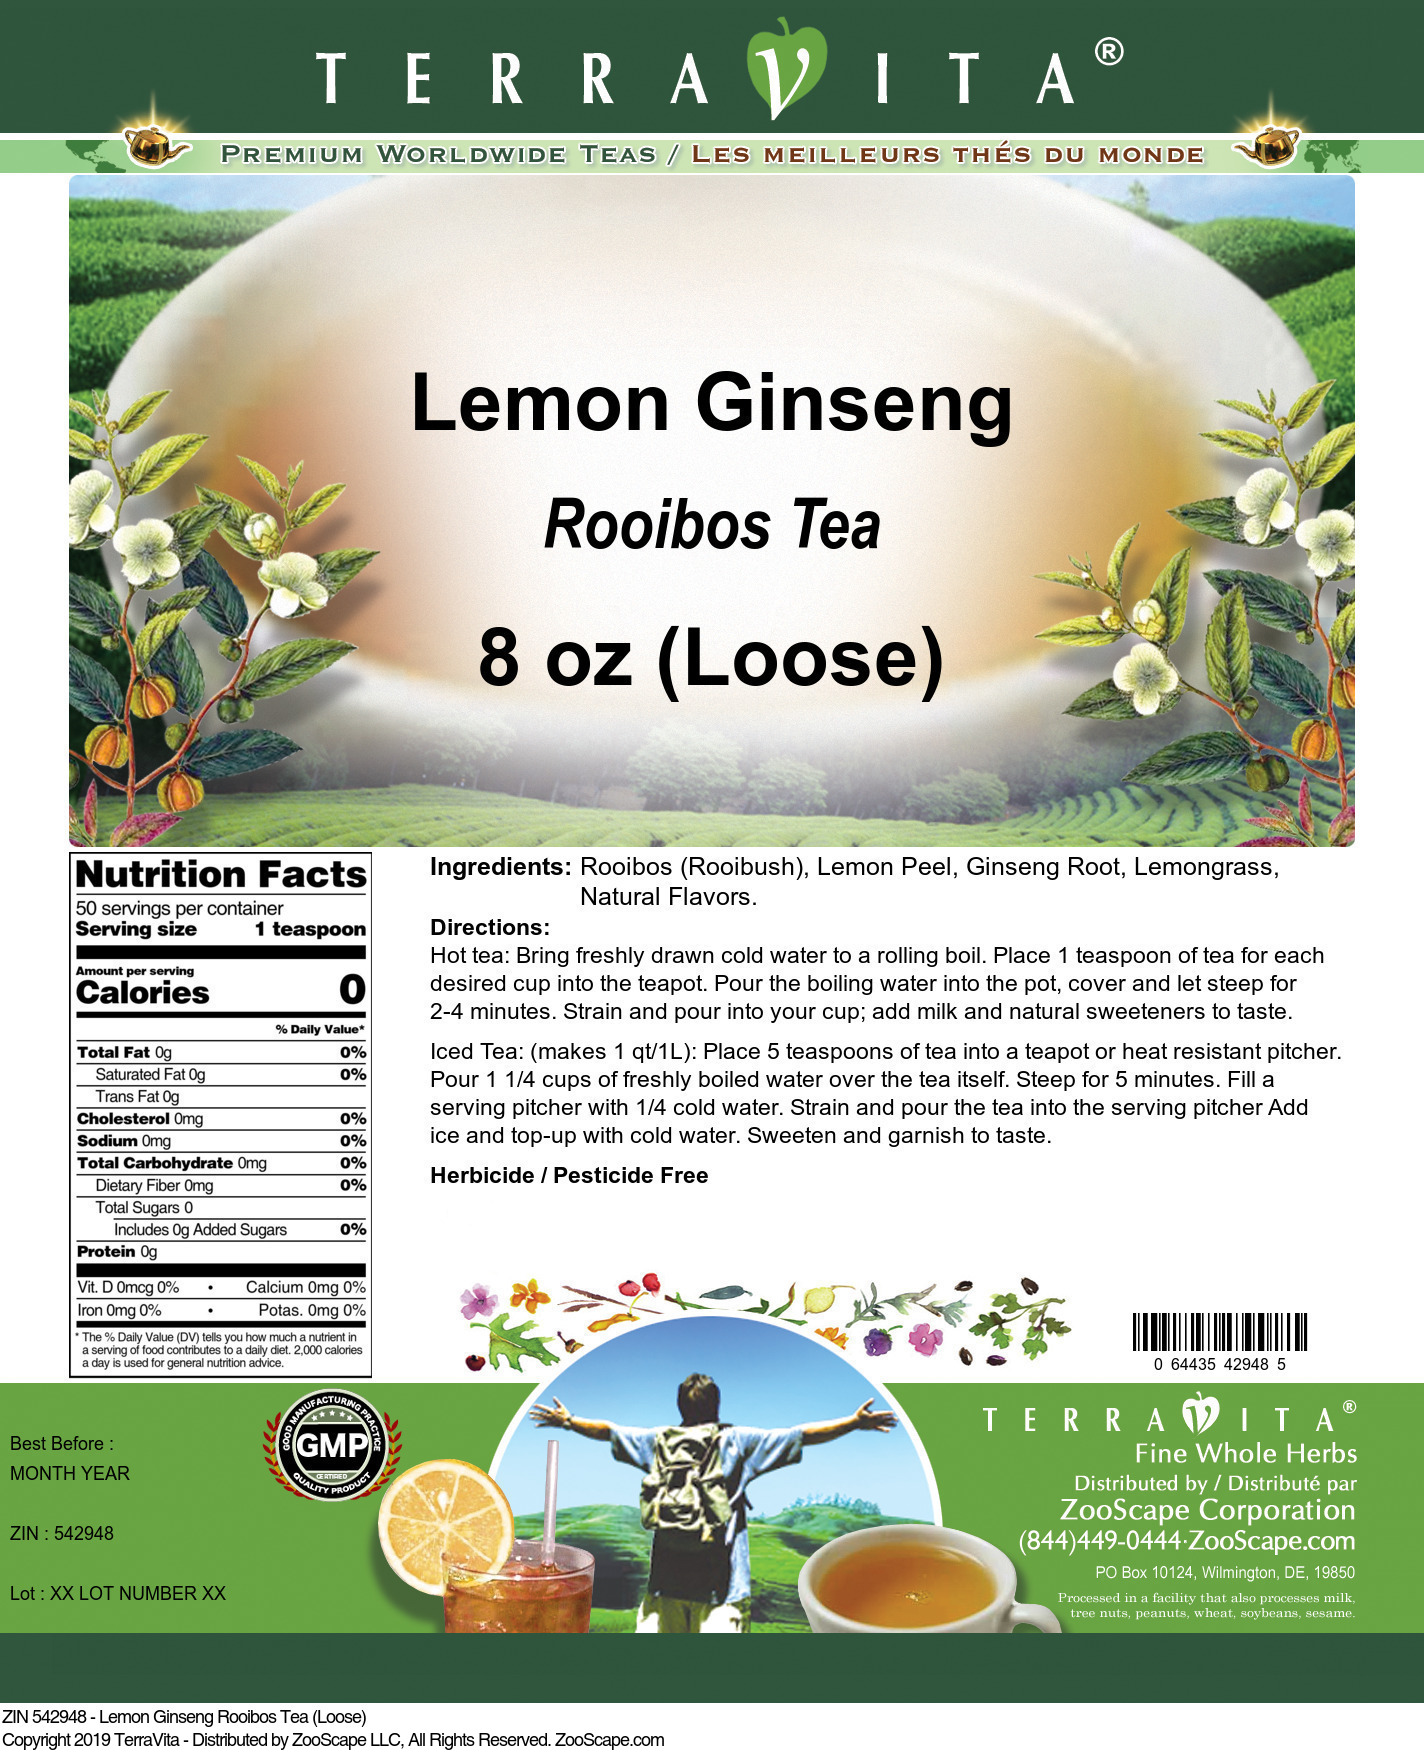 Lemon Ginseng Rooibos Tea (Loose) - Label